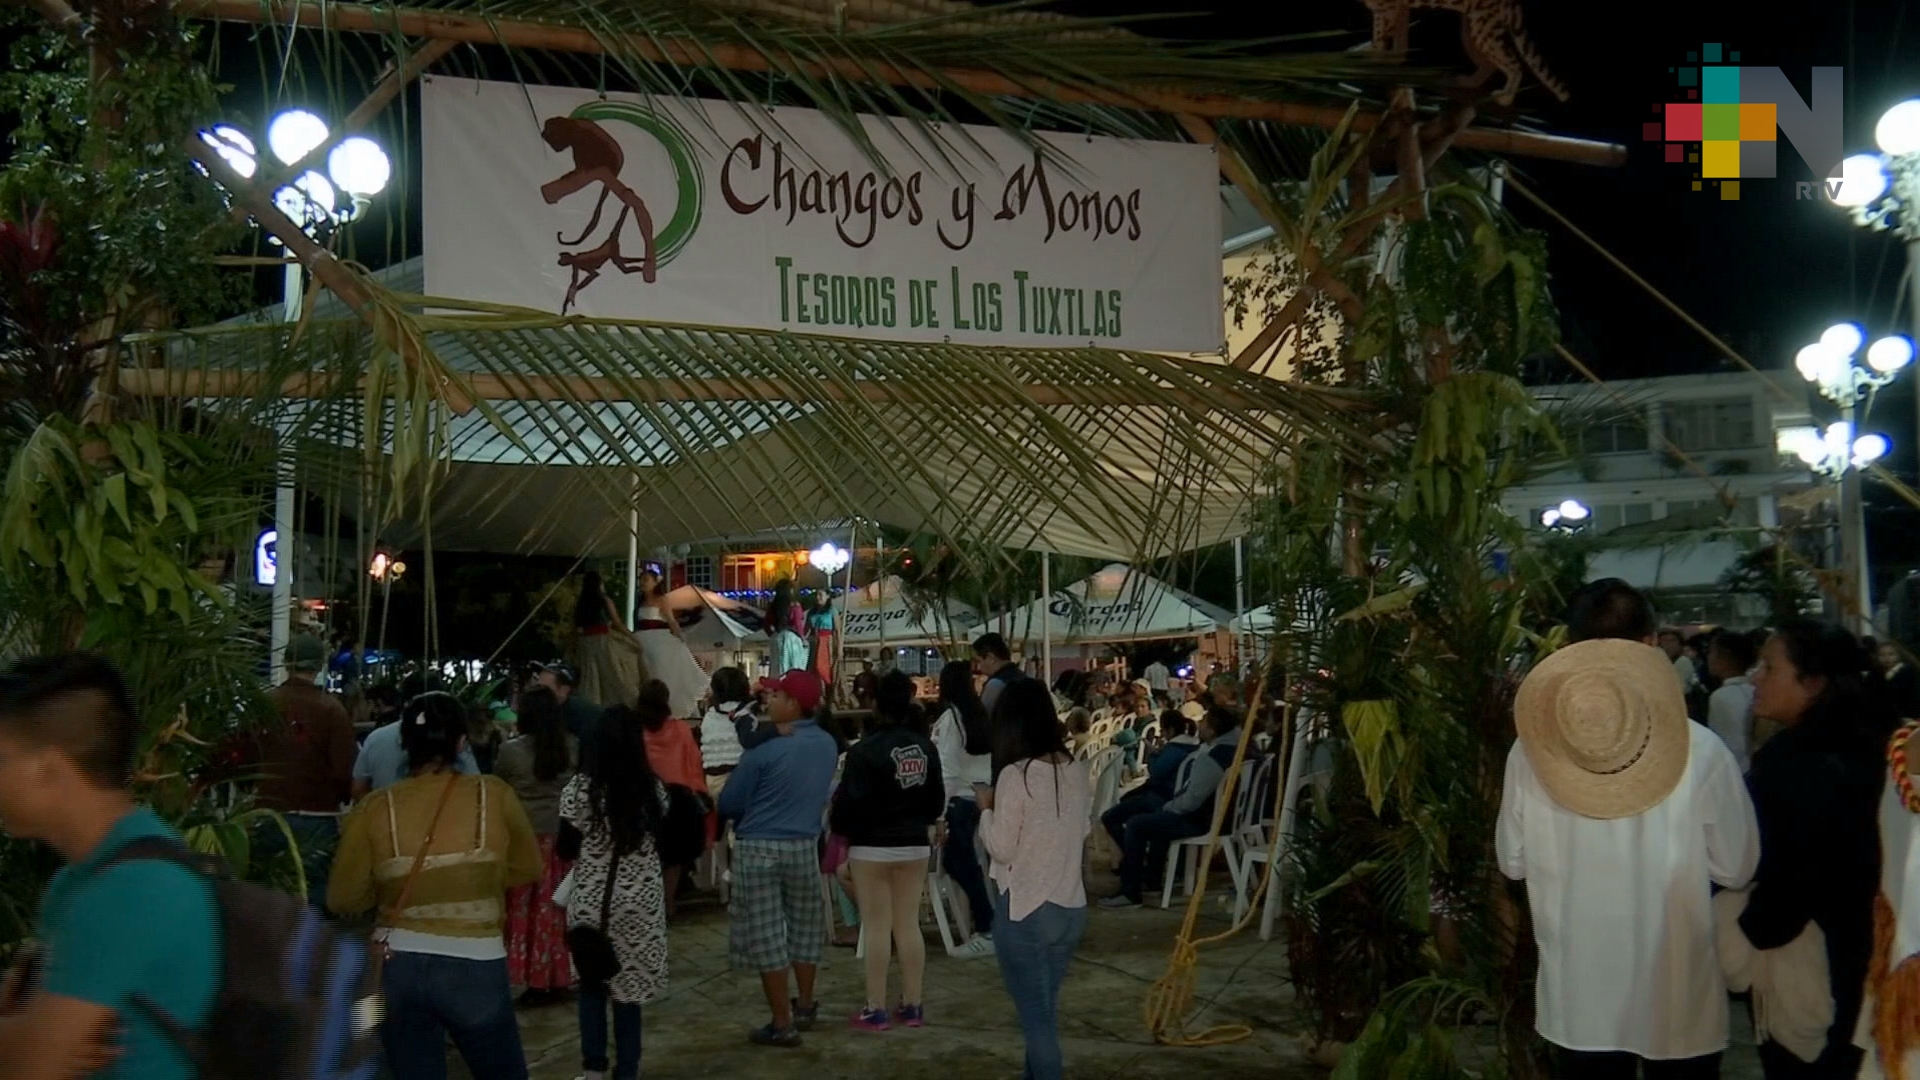 Con éxito realizan el Cuarto Festival Changos y Monos: Tesoros de Los Tuxtlas